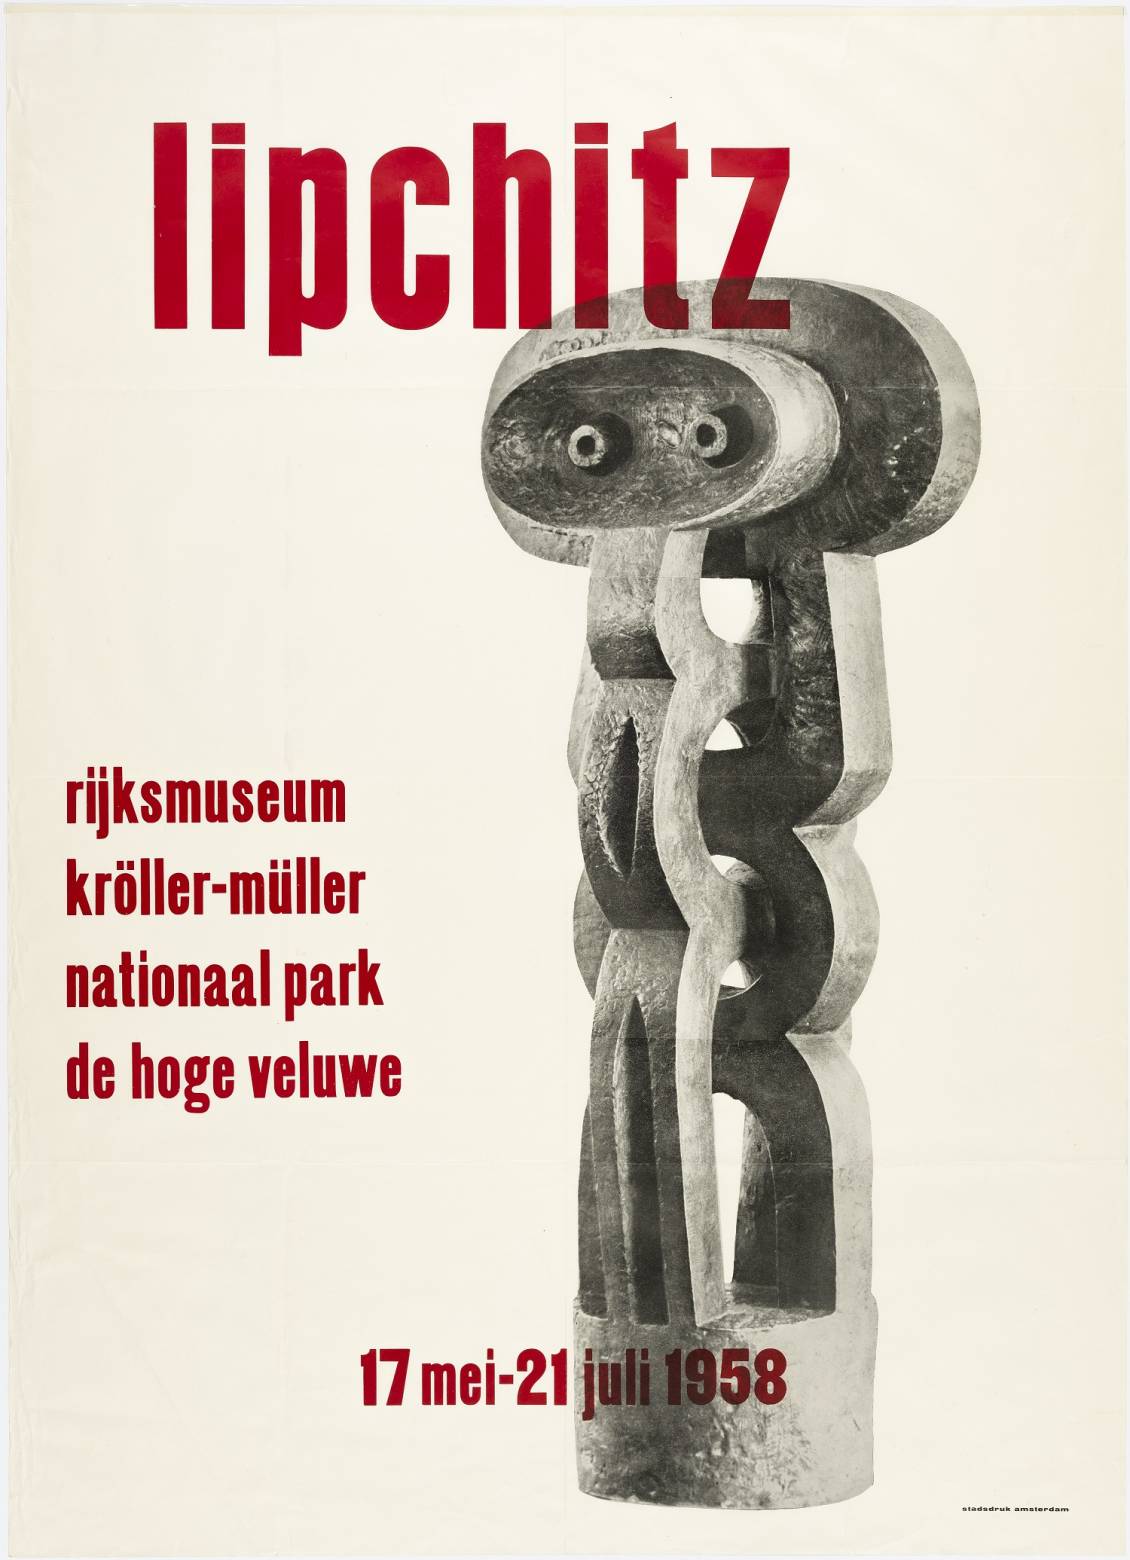 Tentoonstellingsaffiche 'Lipchitz', 1958